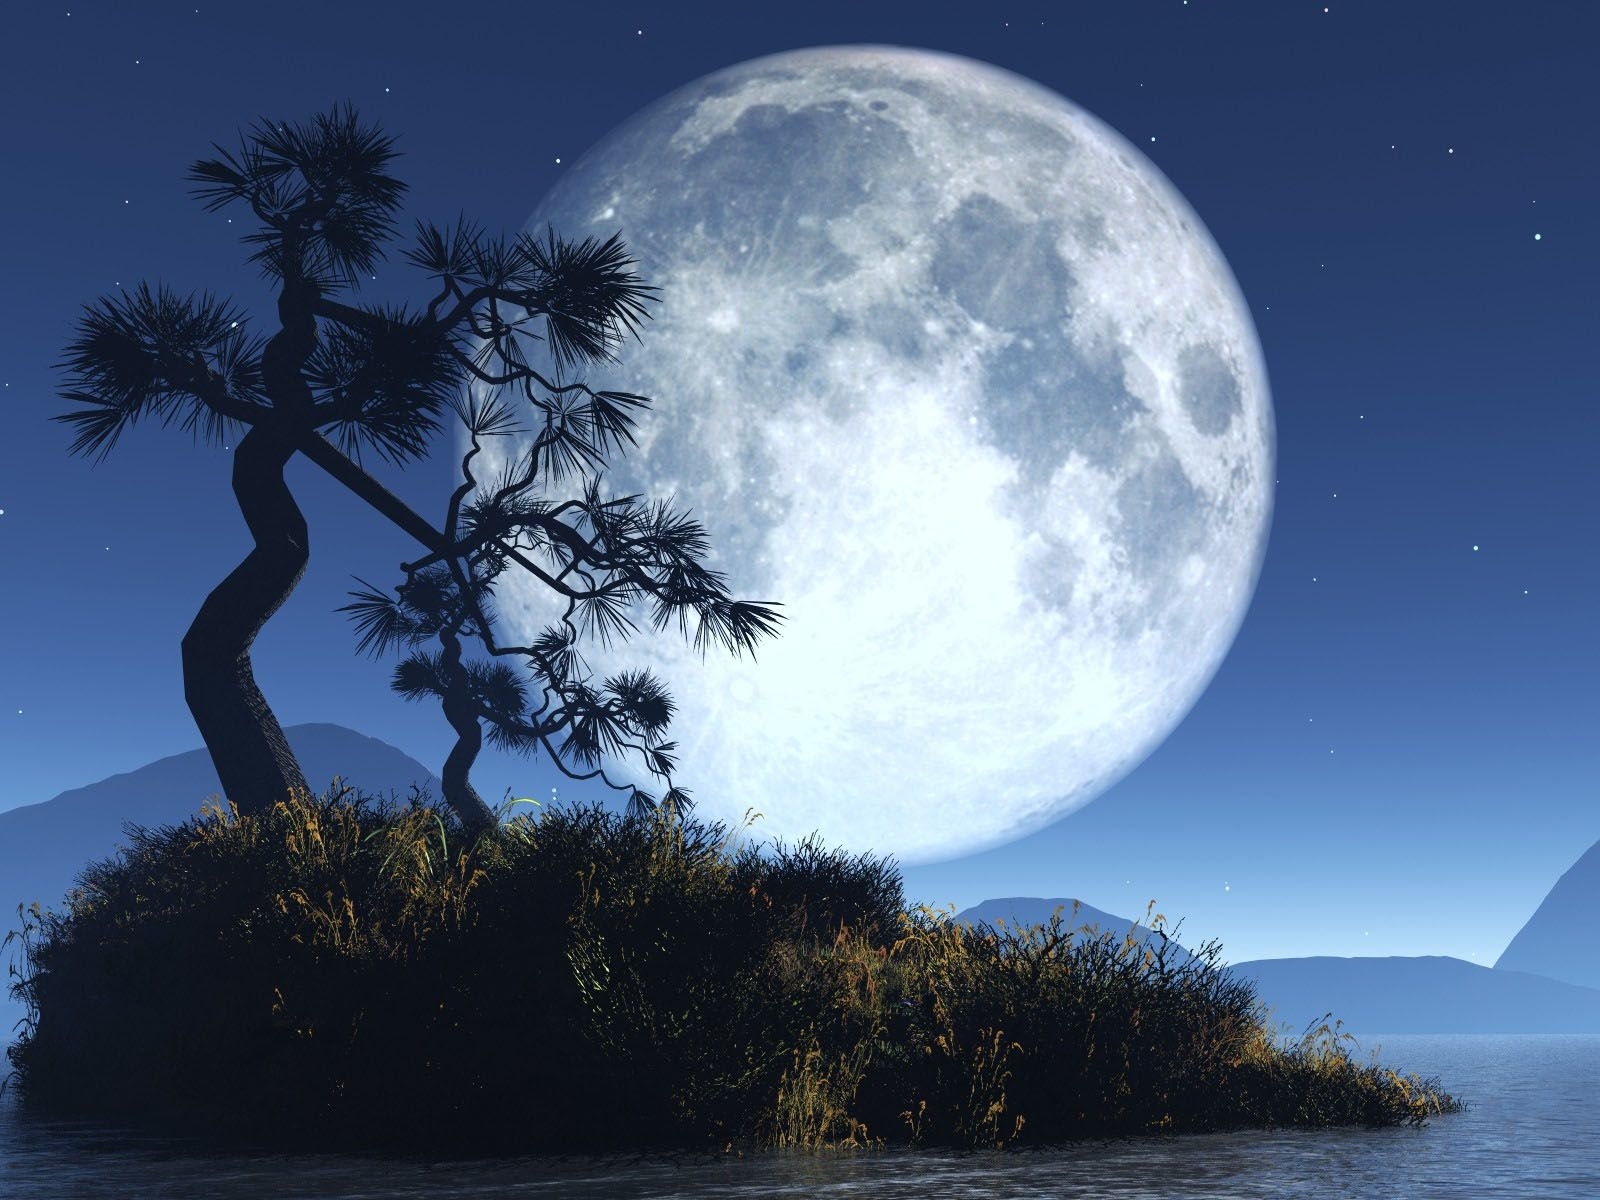 Скачать обои бесплатно Деревья, Ночь, Луна, Пейзаж картинка на рабочий стол ПК